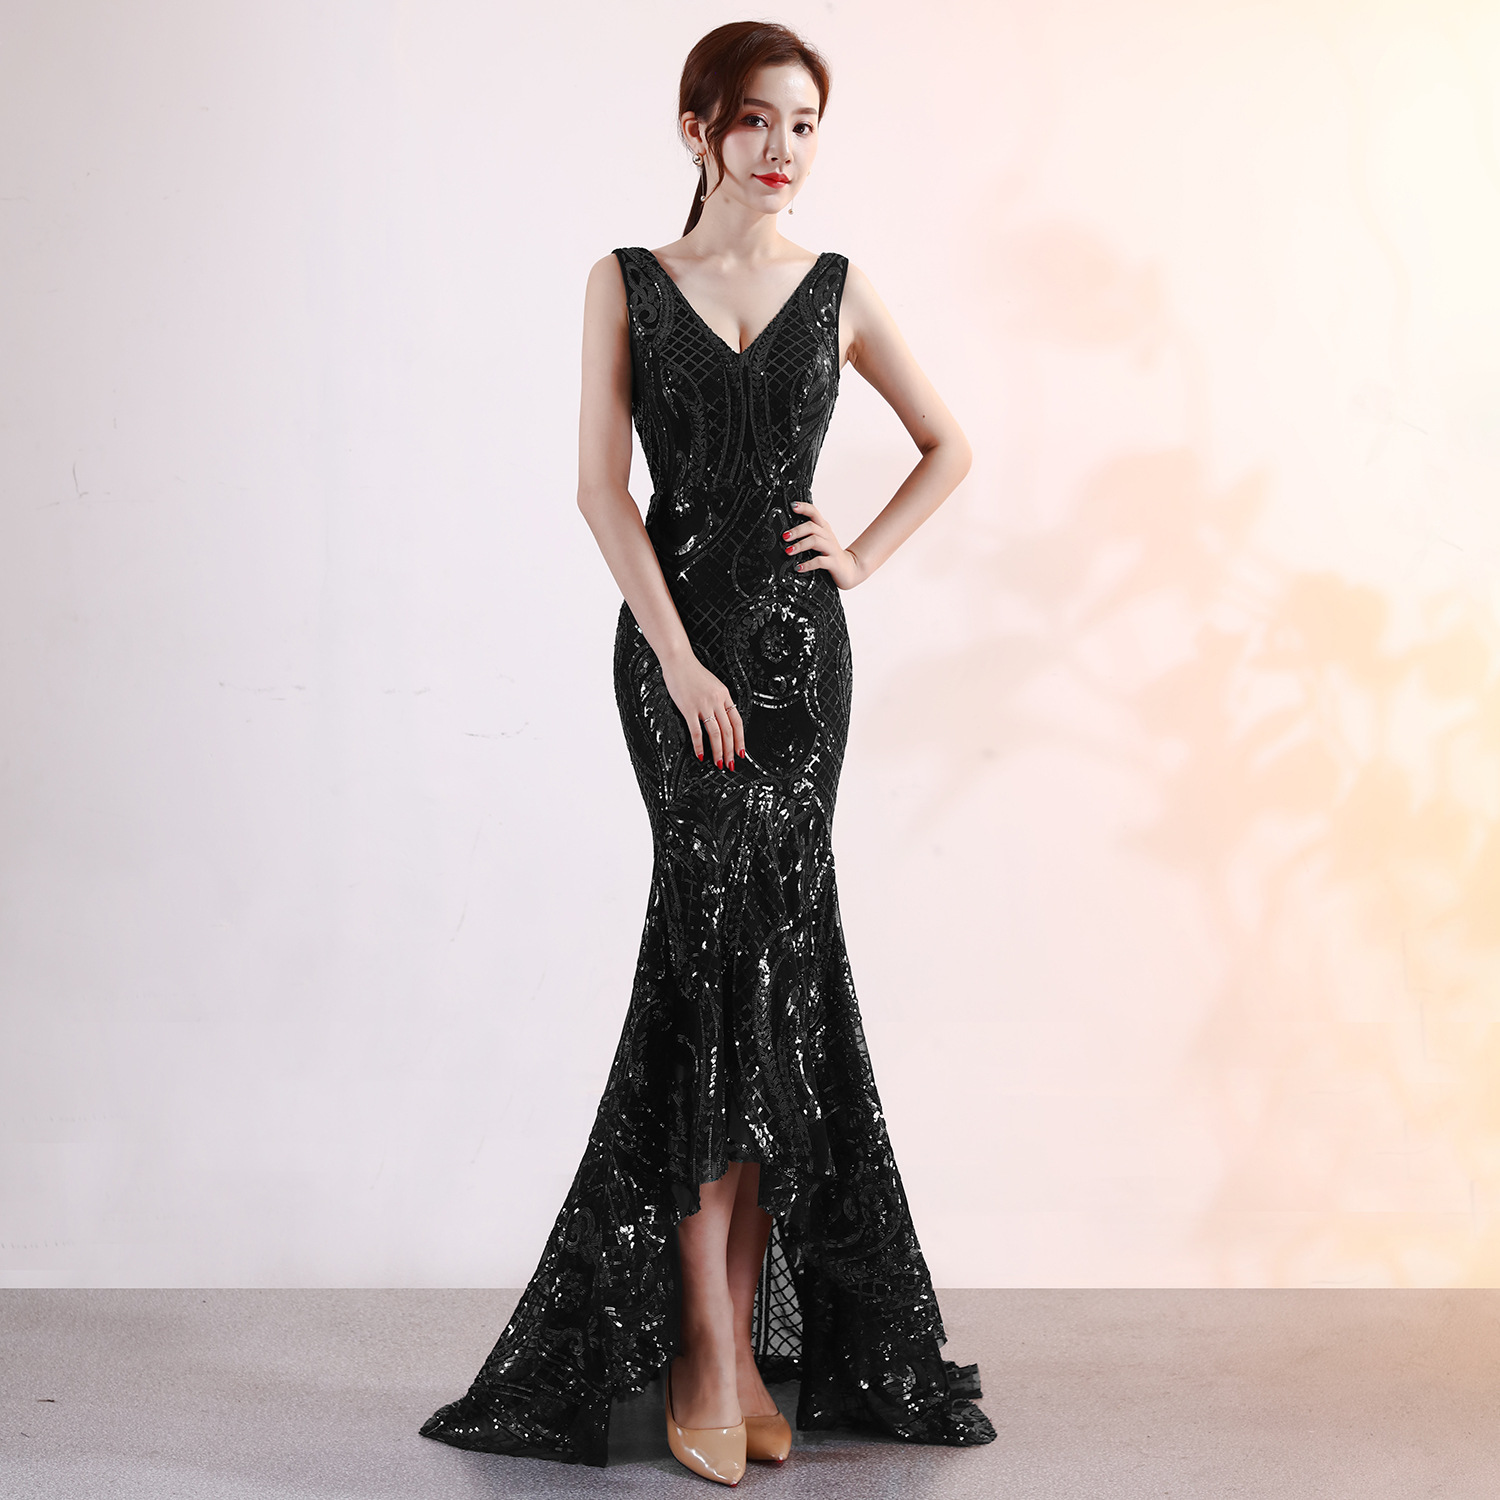 Đi tìm mẫu váy dạ hội nhung giúp nàng tỏa sáng nhất trong buổi tiệc  2  Sản phẩm  Chợ Lạng Sơn